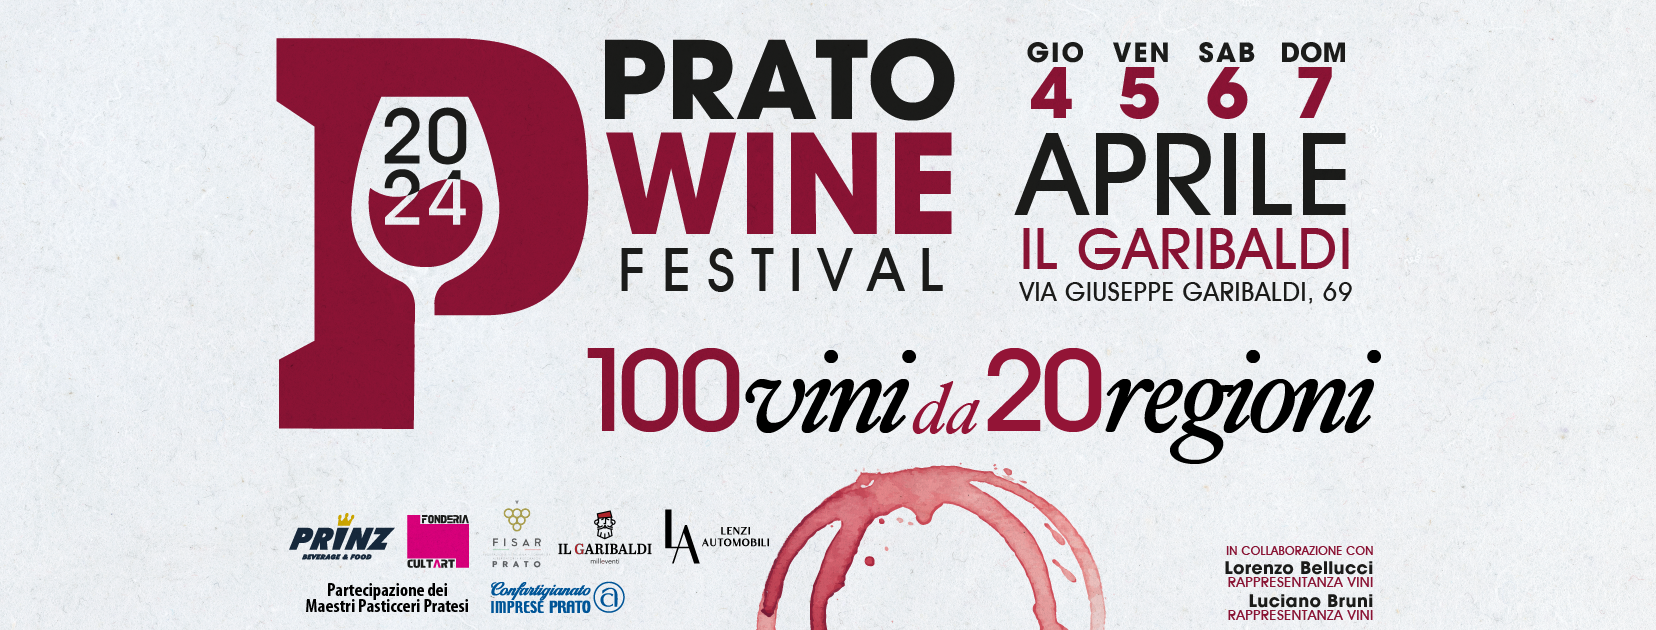 Prato Wine Festival